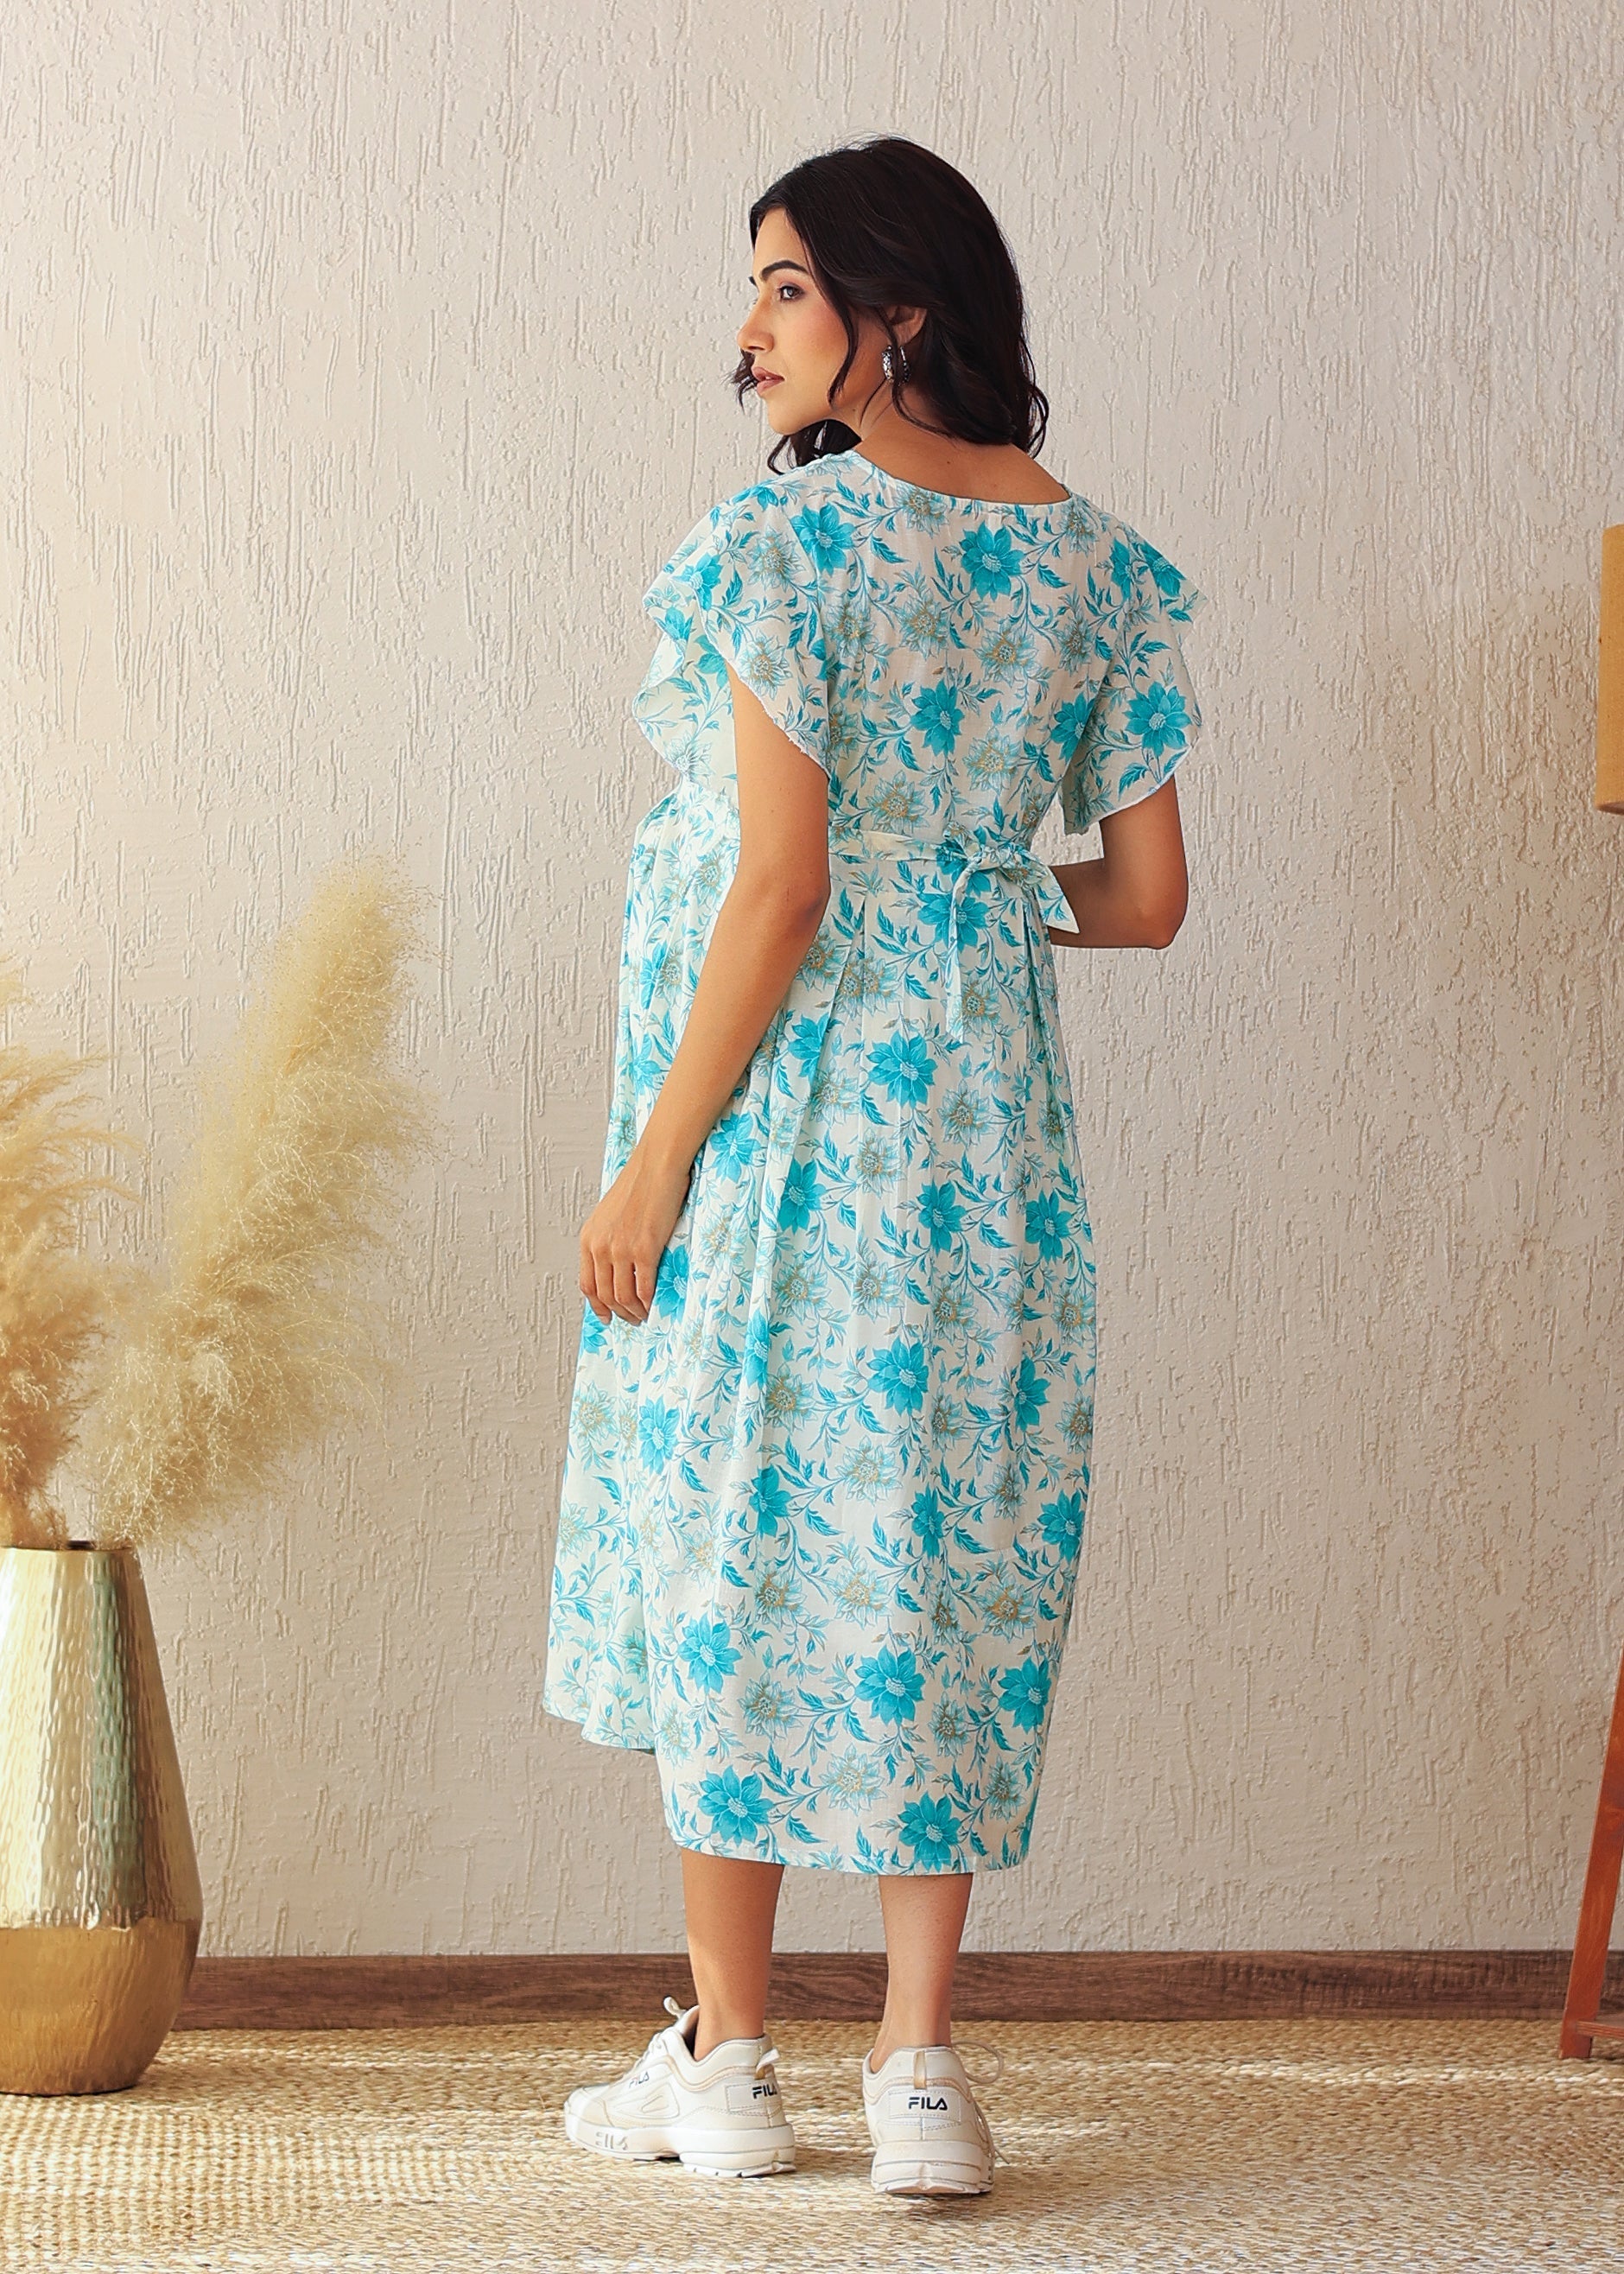 Plus size Blue Floral Cotton Nursing Midi Dress: Stylish Comfort